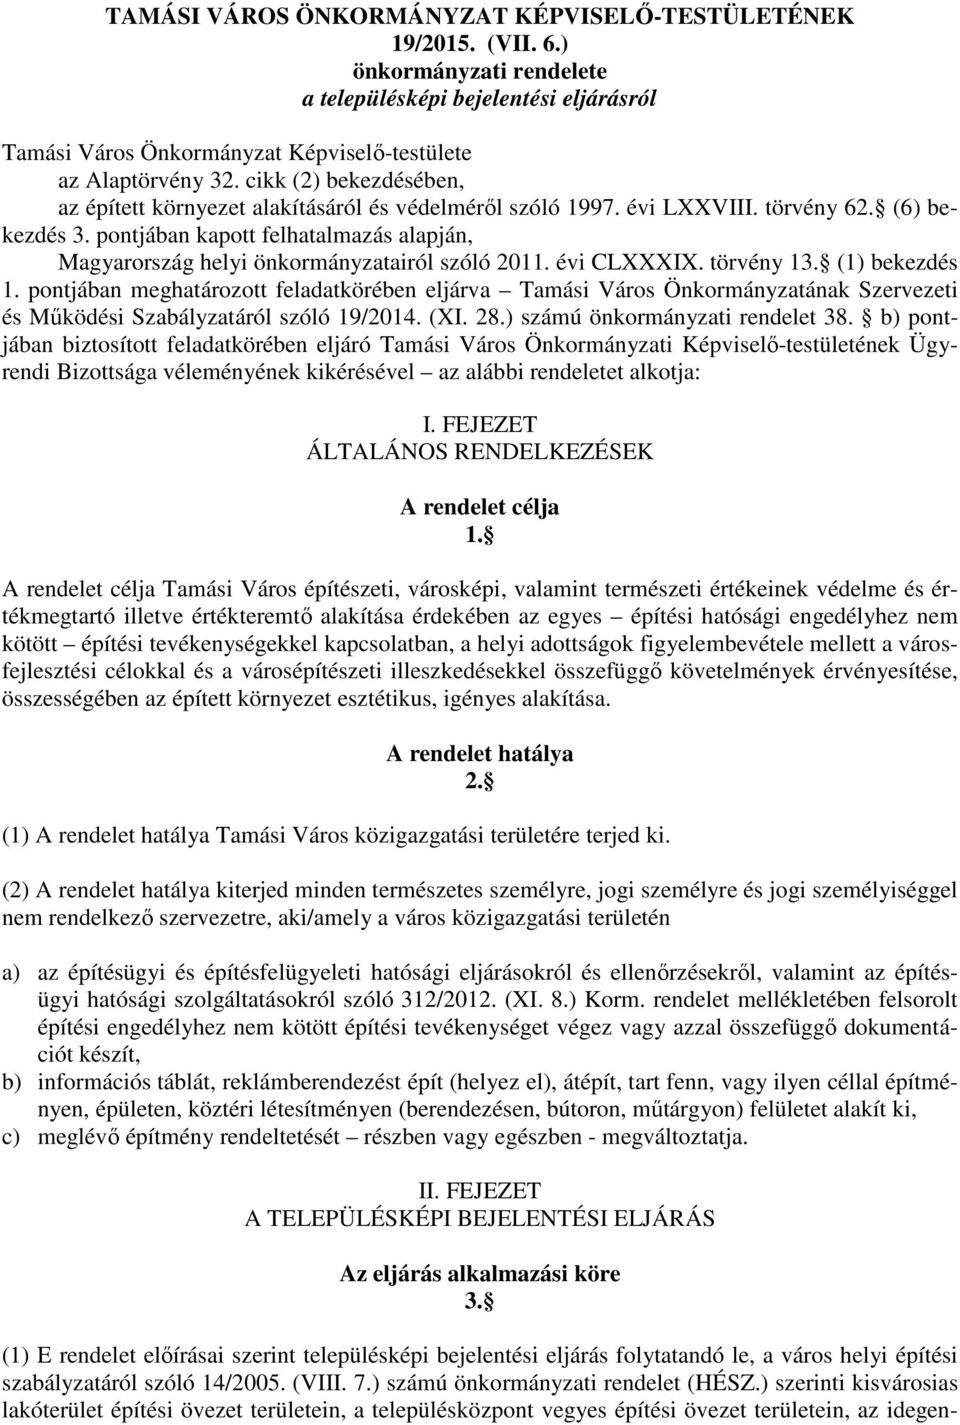 pontjában kapott felhatalmazás alapján, Magyarország helyi önkormányzatairól szóló 2011. évi CLXXXIX. törvény 13. (1) bekezdés 1.